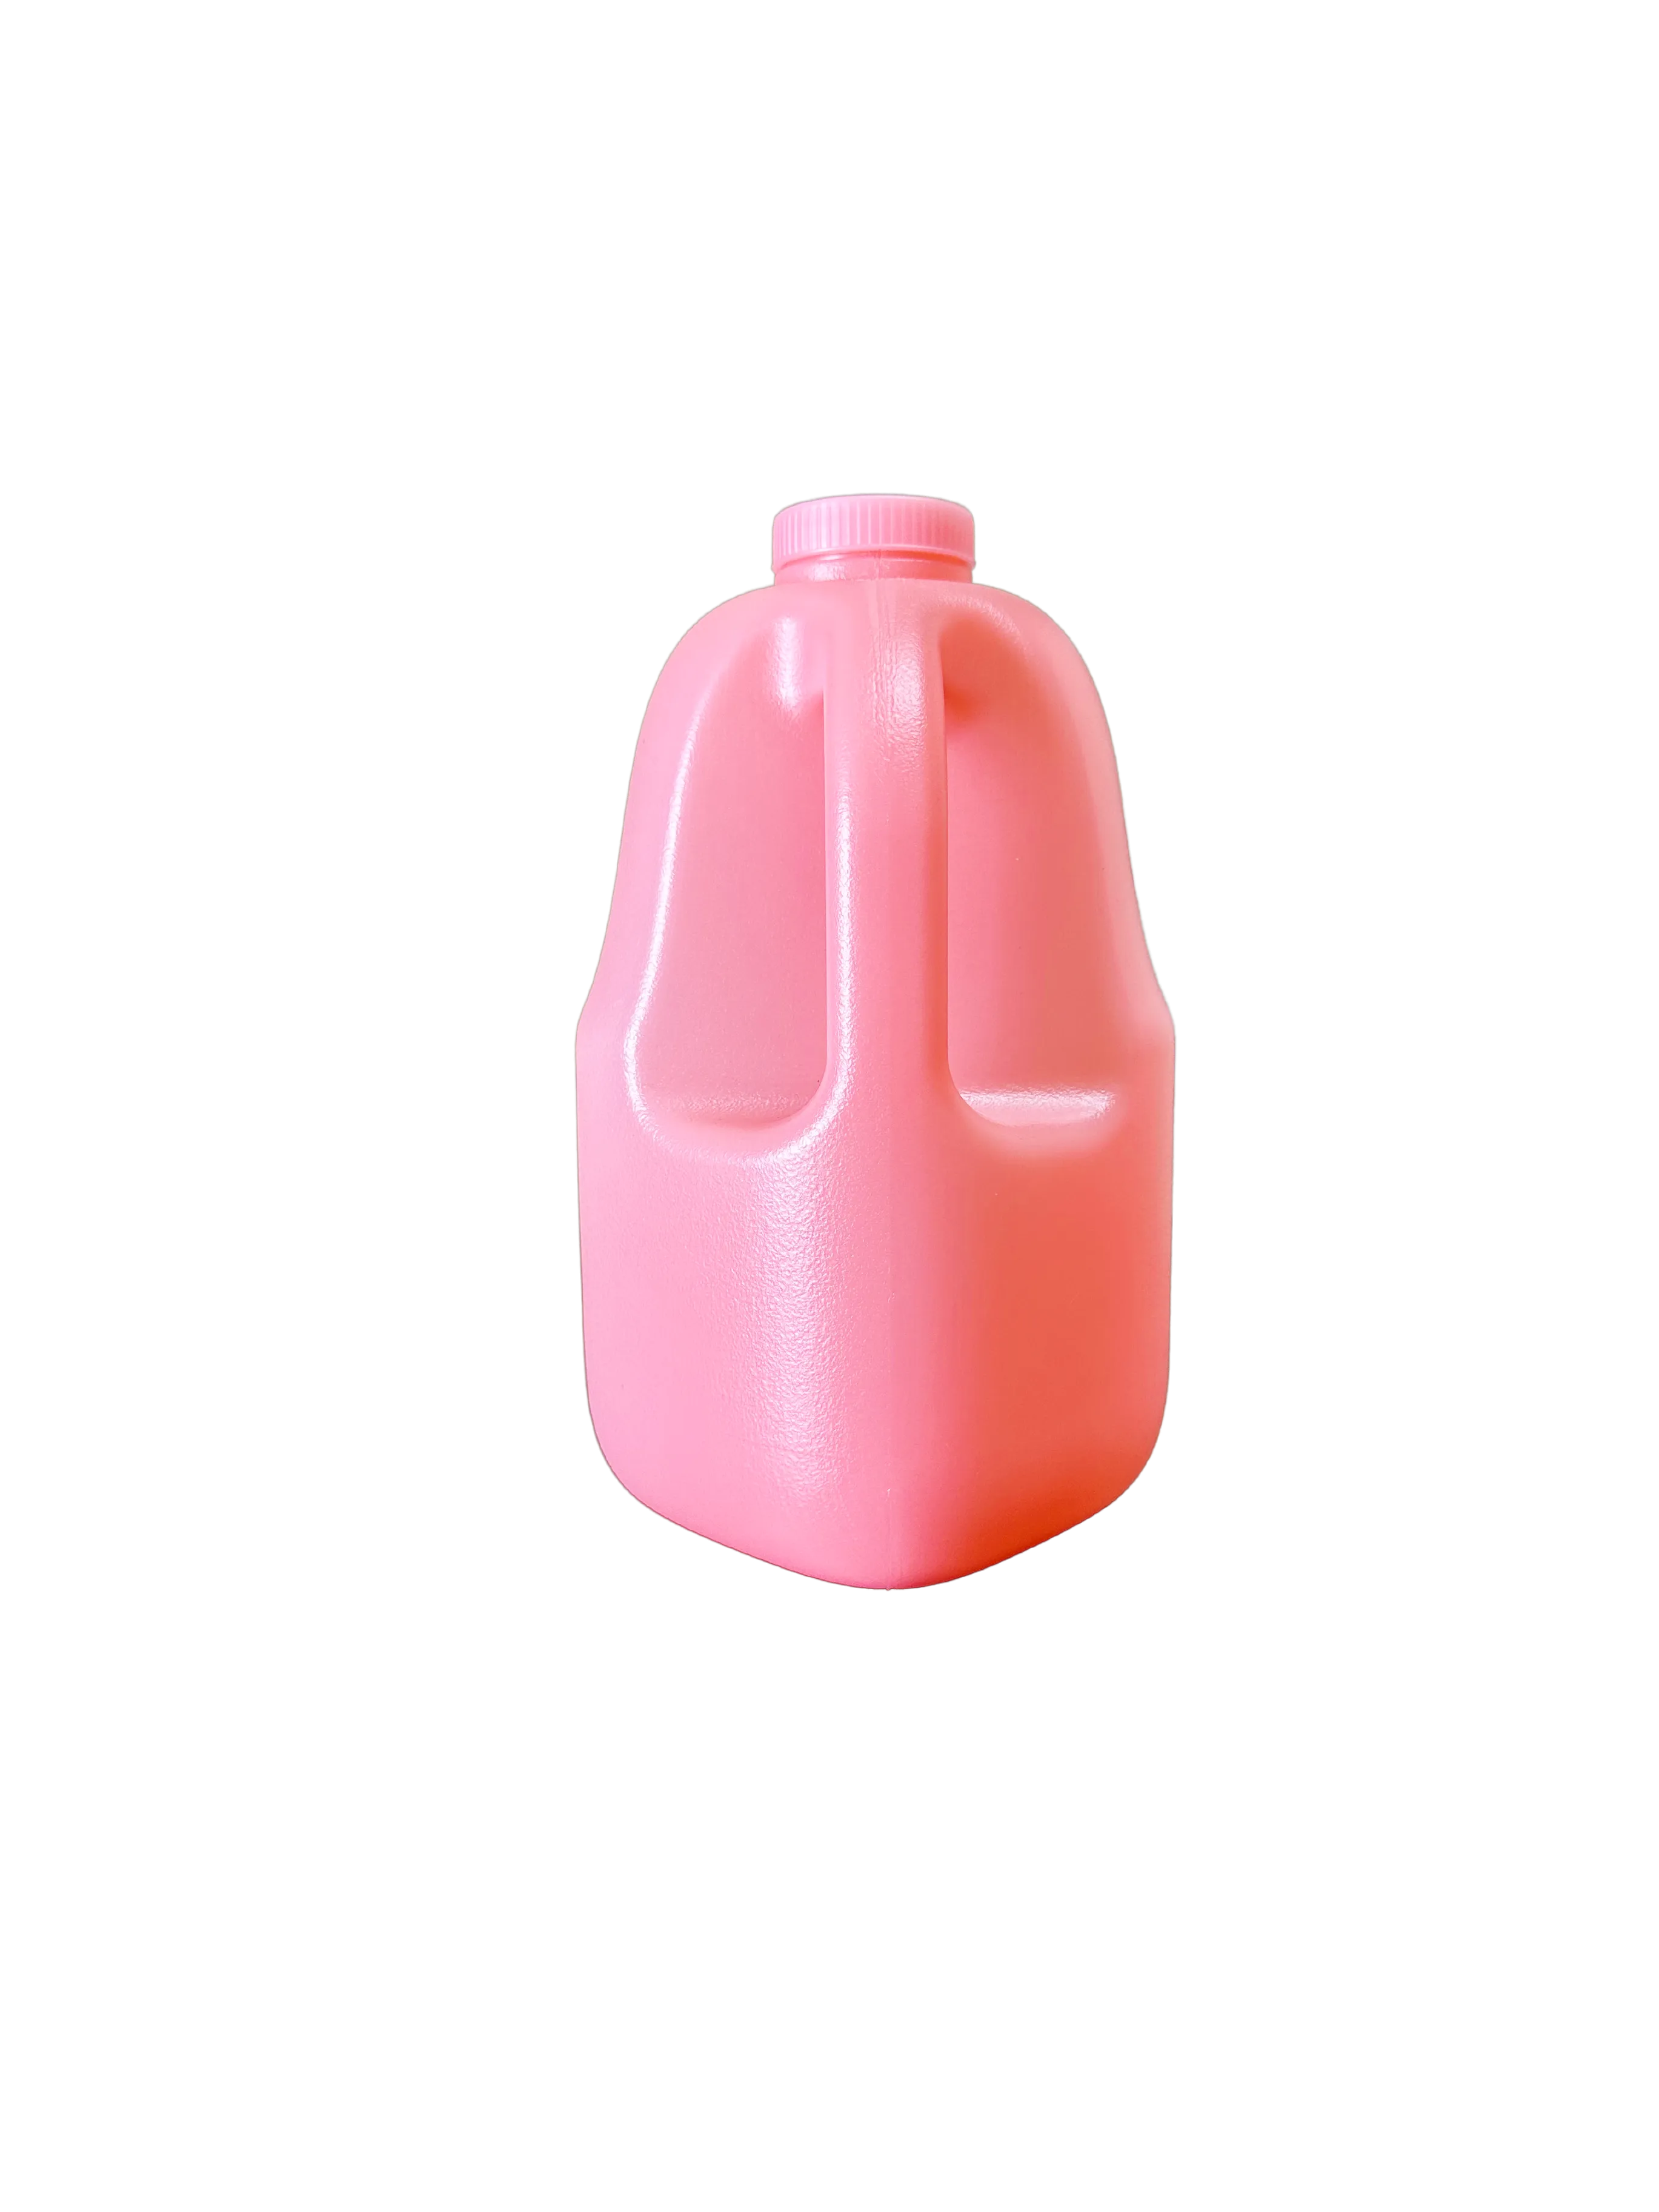 #jug color_Pink